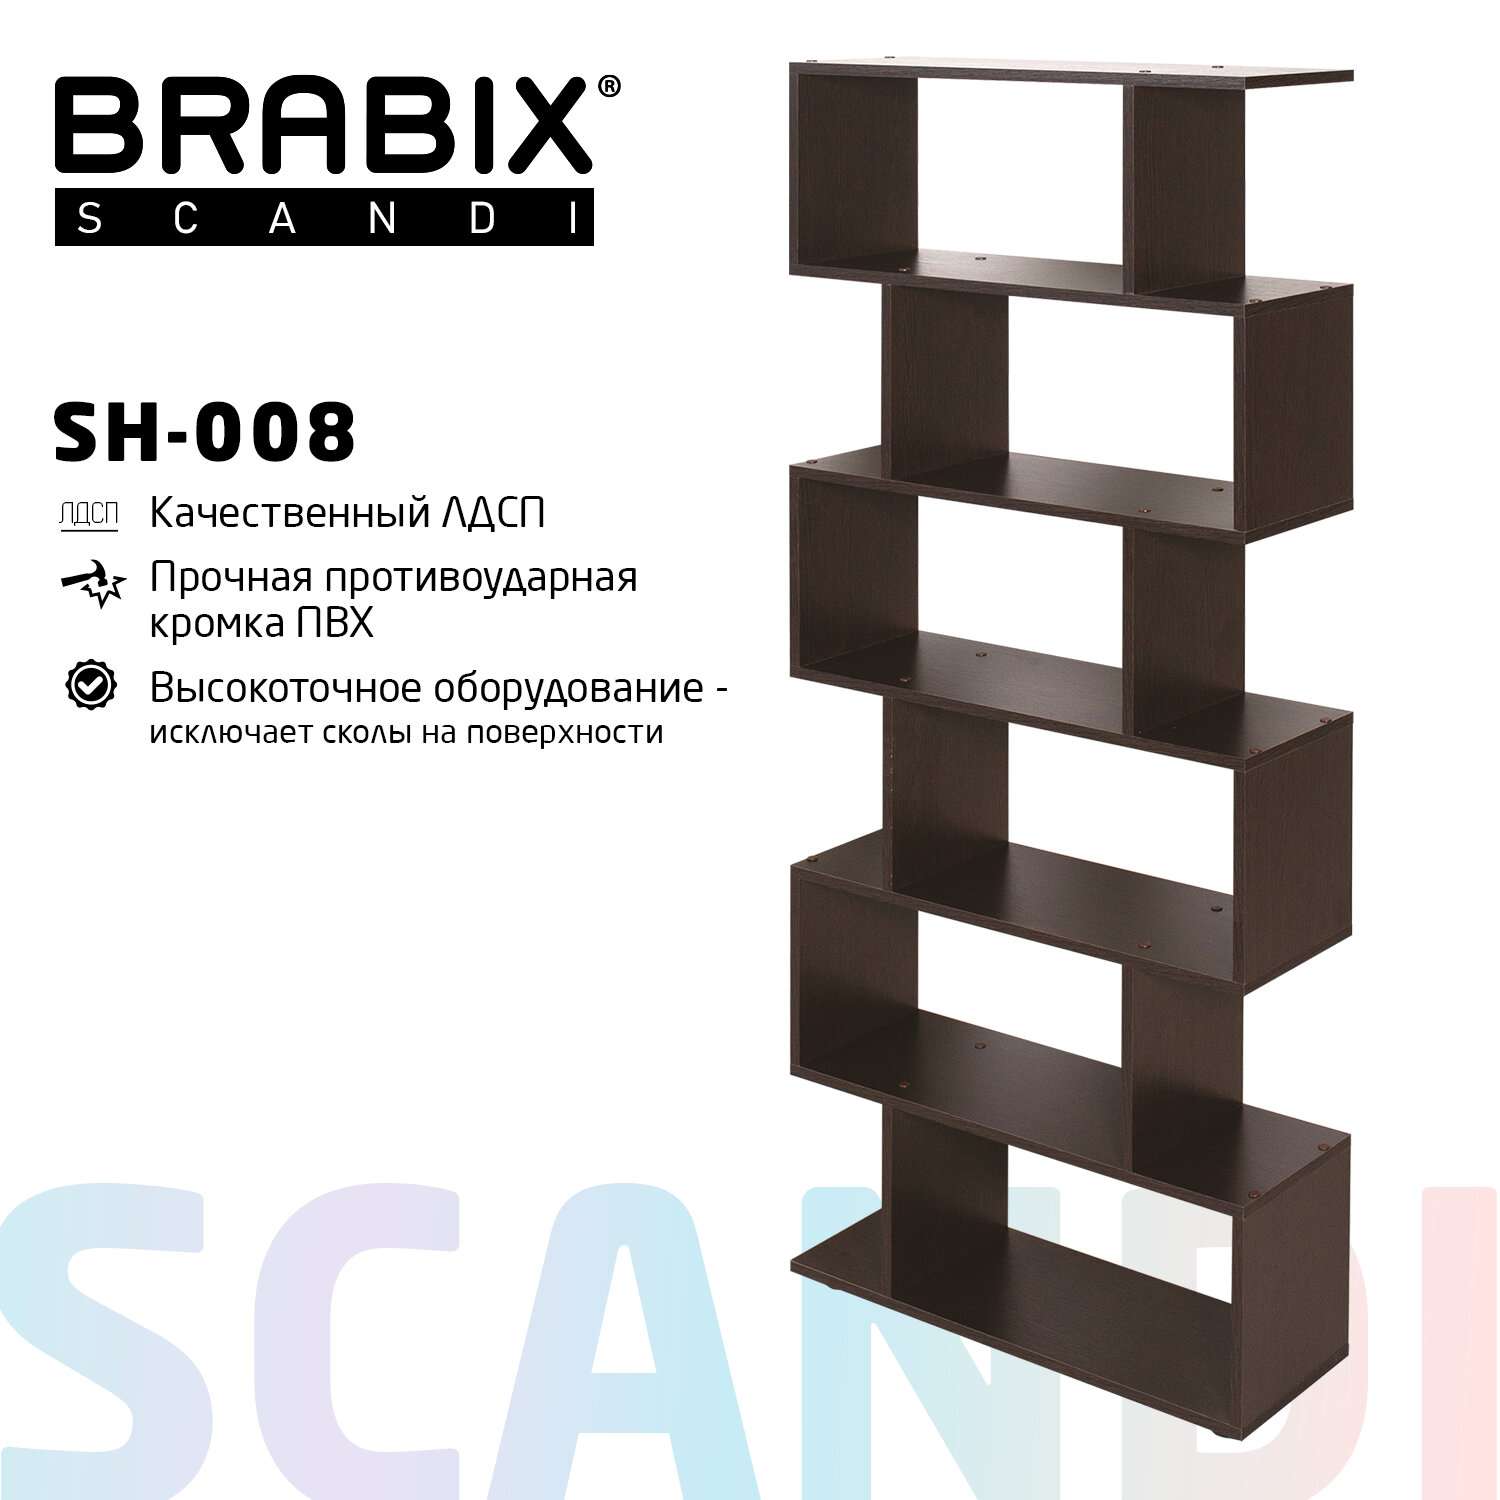 Стеллаж Brabix деревянный для хранения вещей 6 секций - фото 2